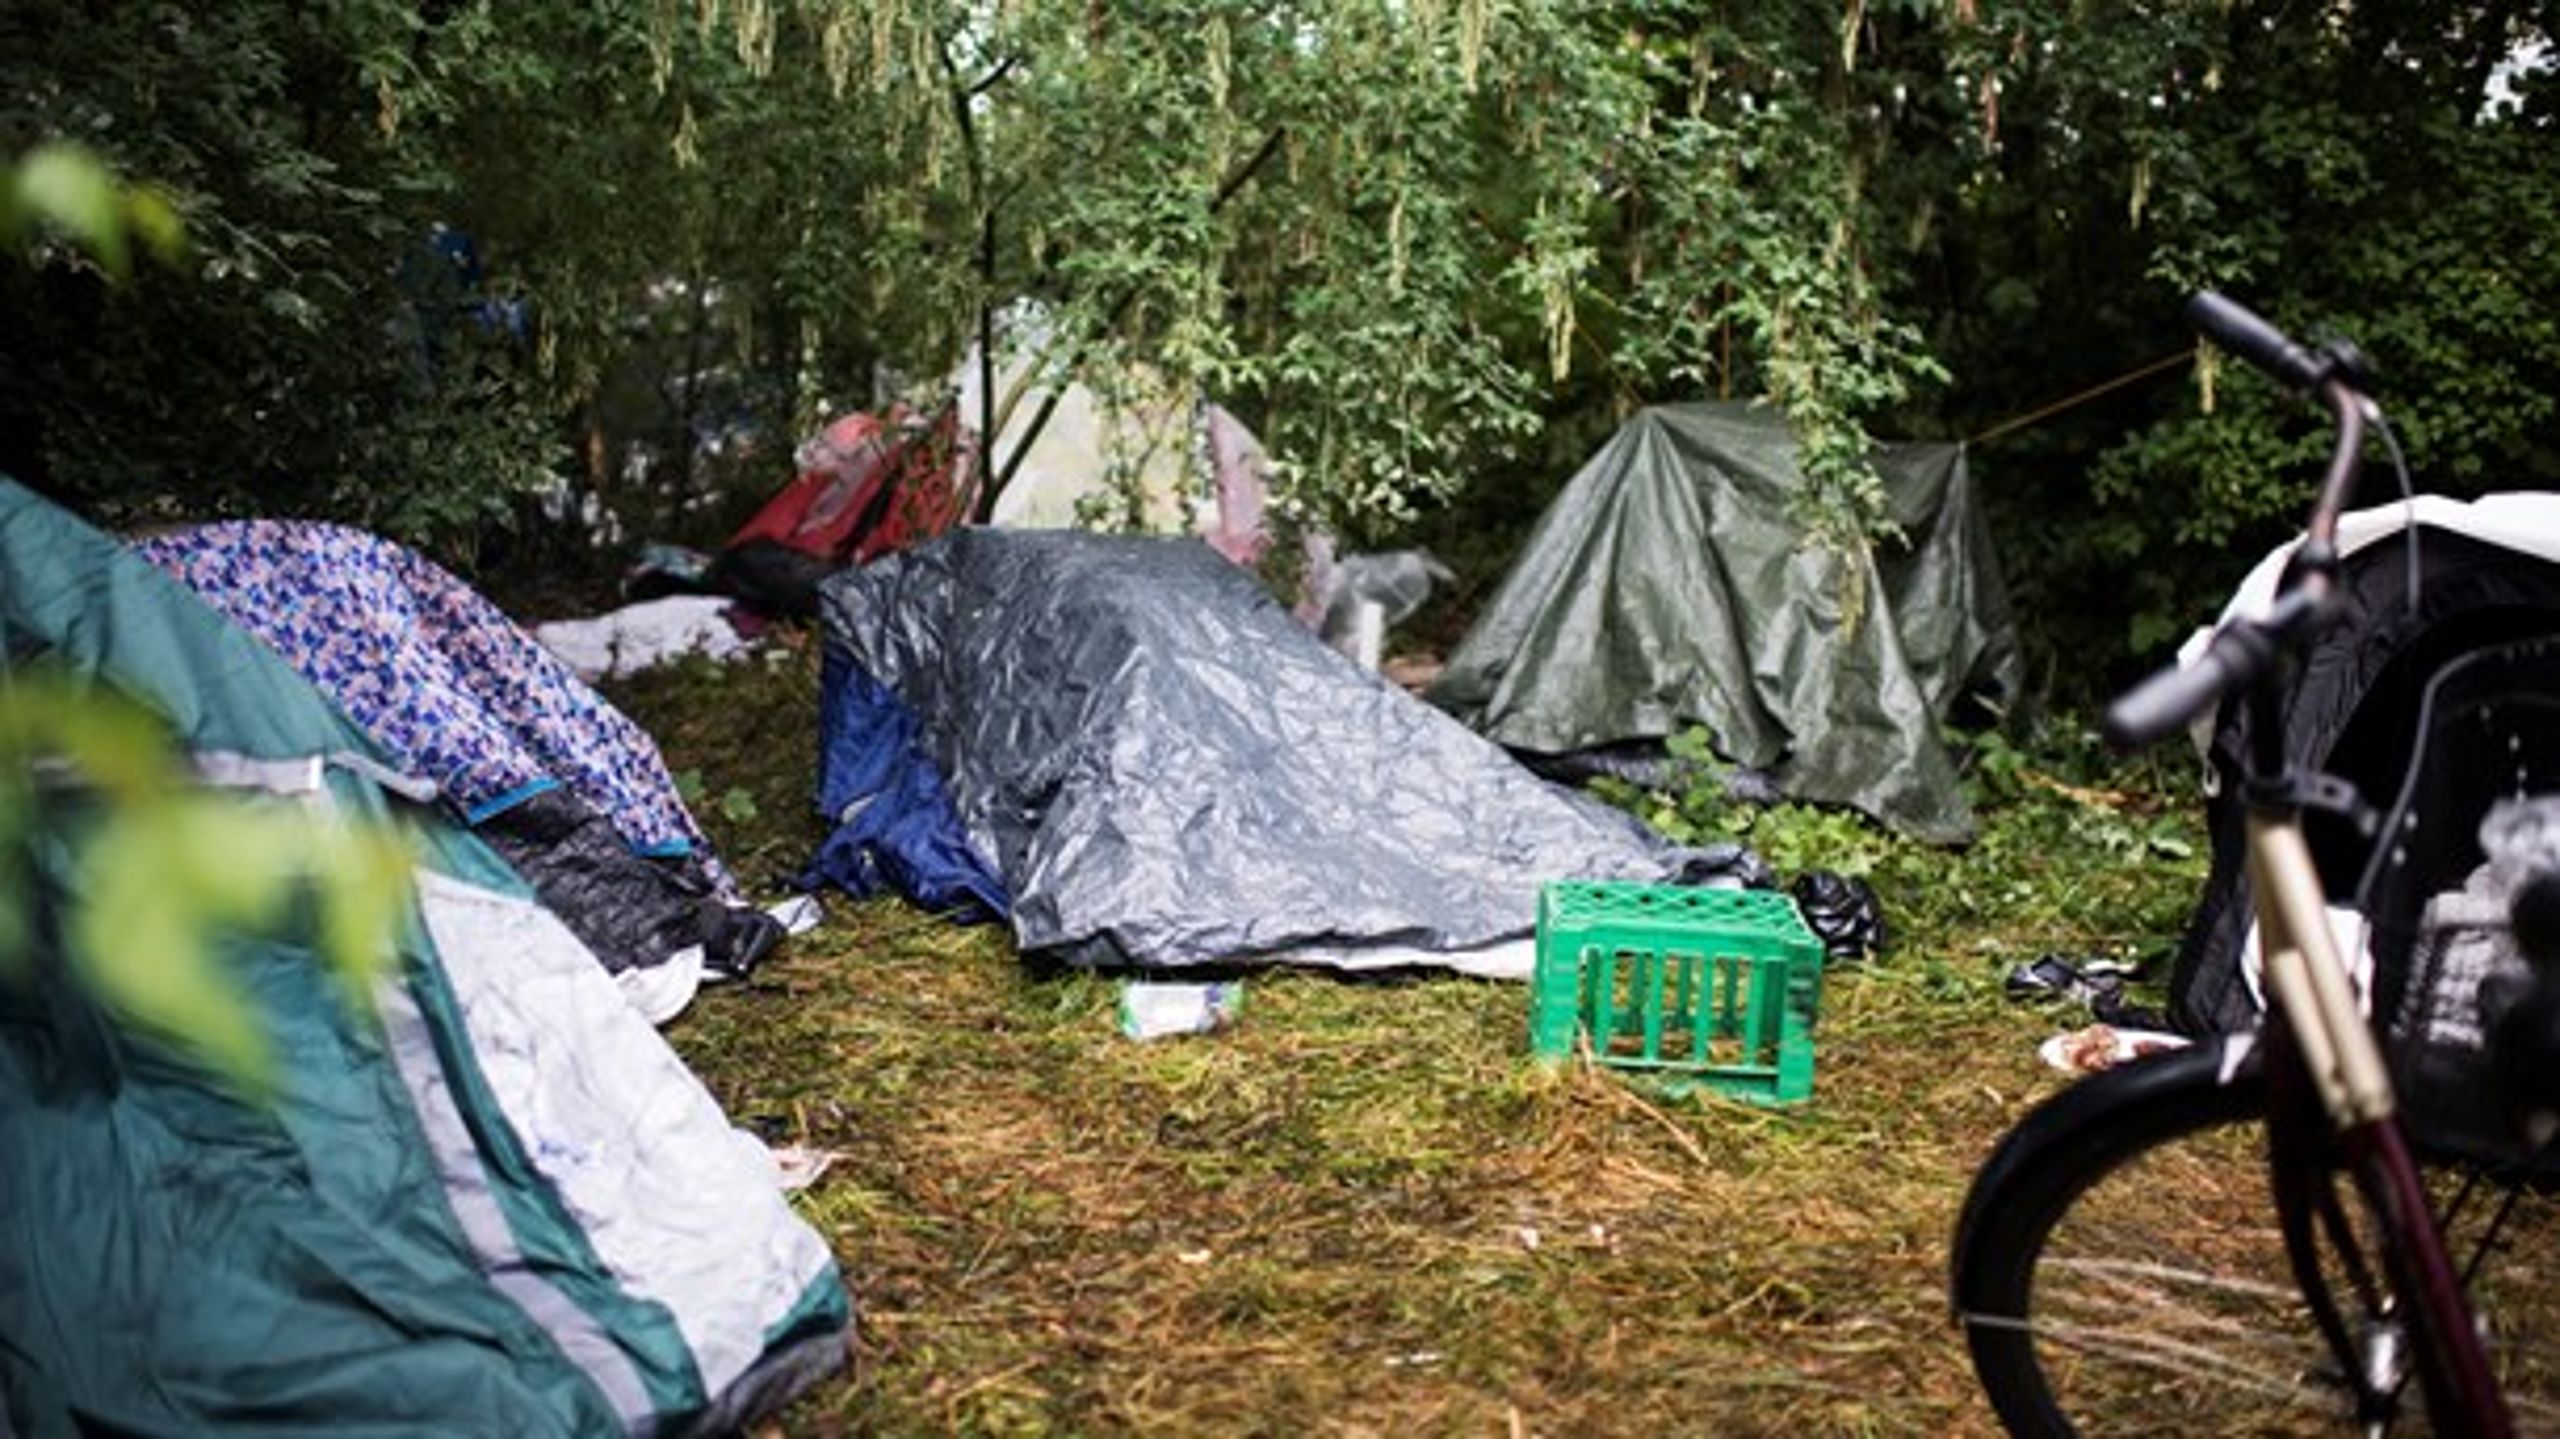 Romalejr ved Ryparken. Et flertal i Folketinget har netop vedtaget at skærpe straffen for såkaldt "utryghedsskabende tiggeri" fra syv dages betinget fængsel til 14 dages ubetinget fængsel.